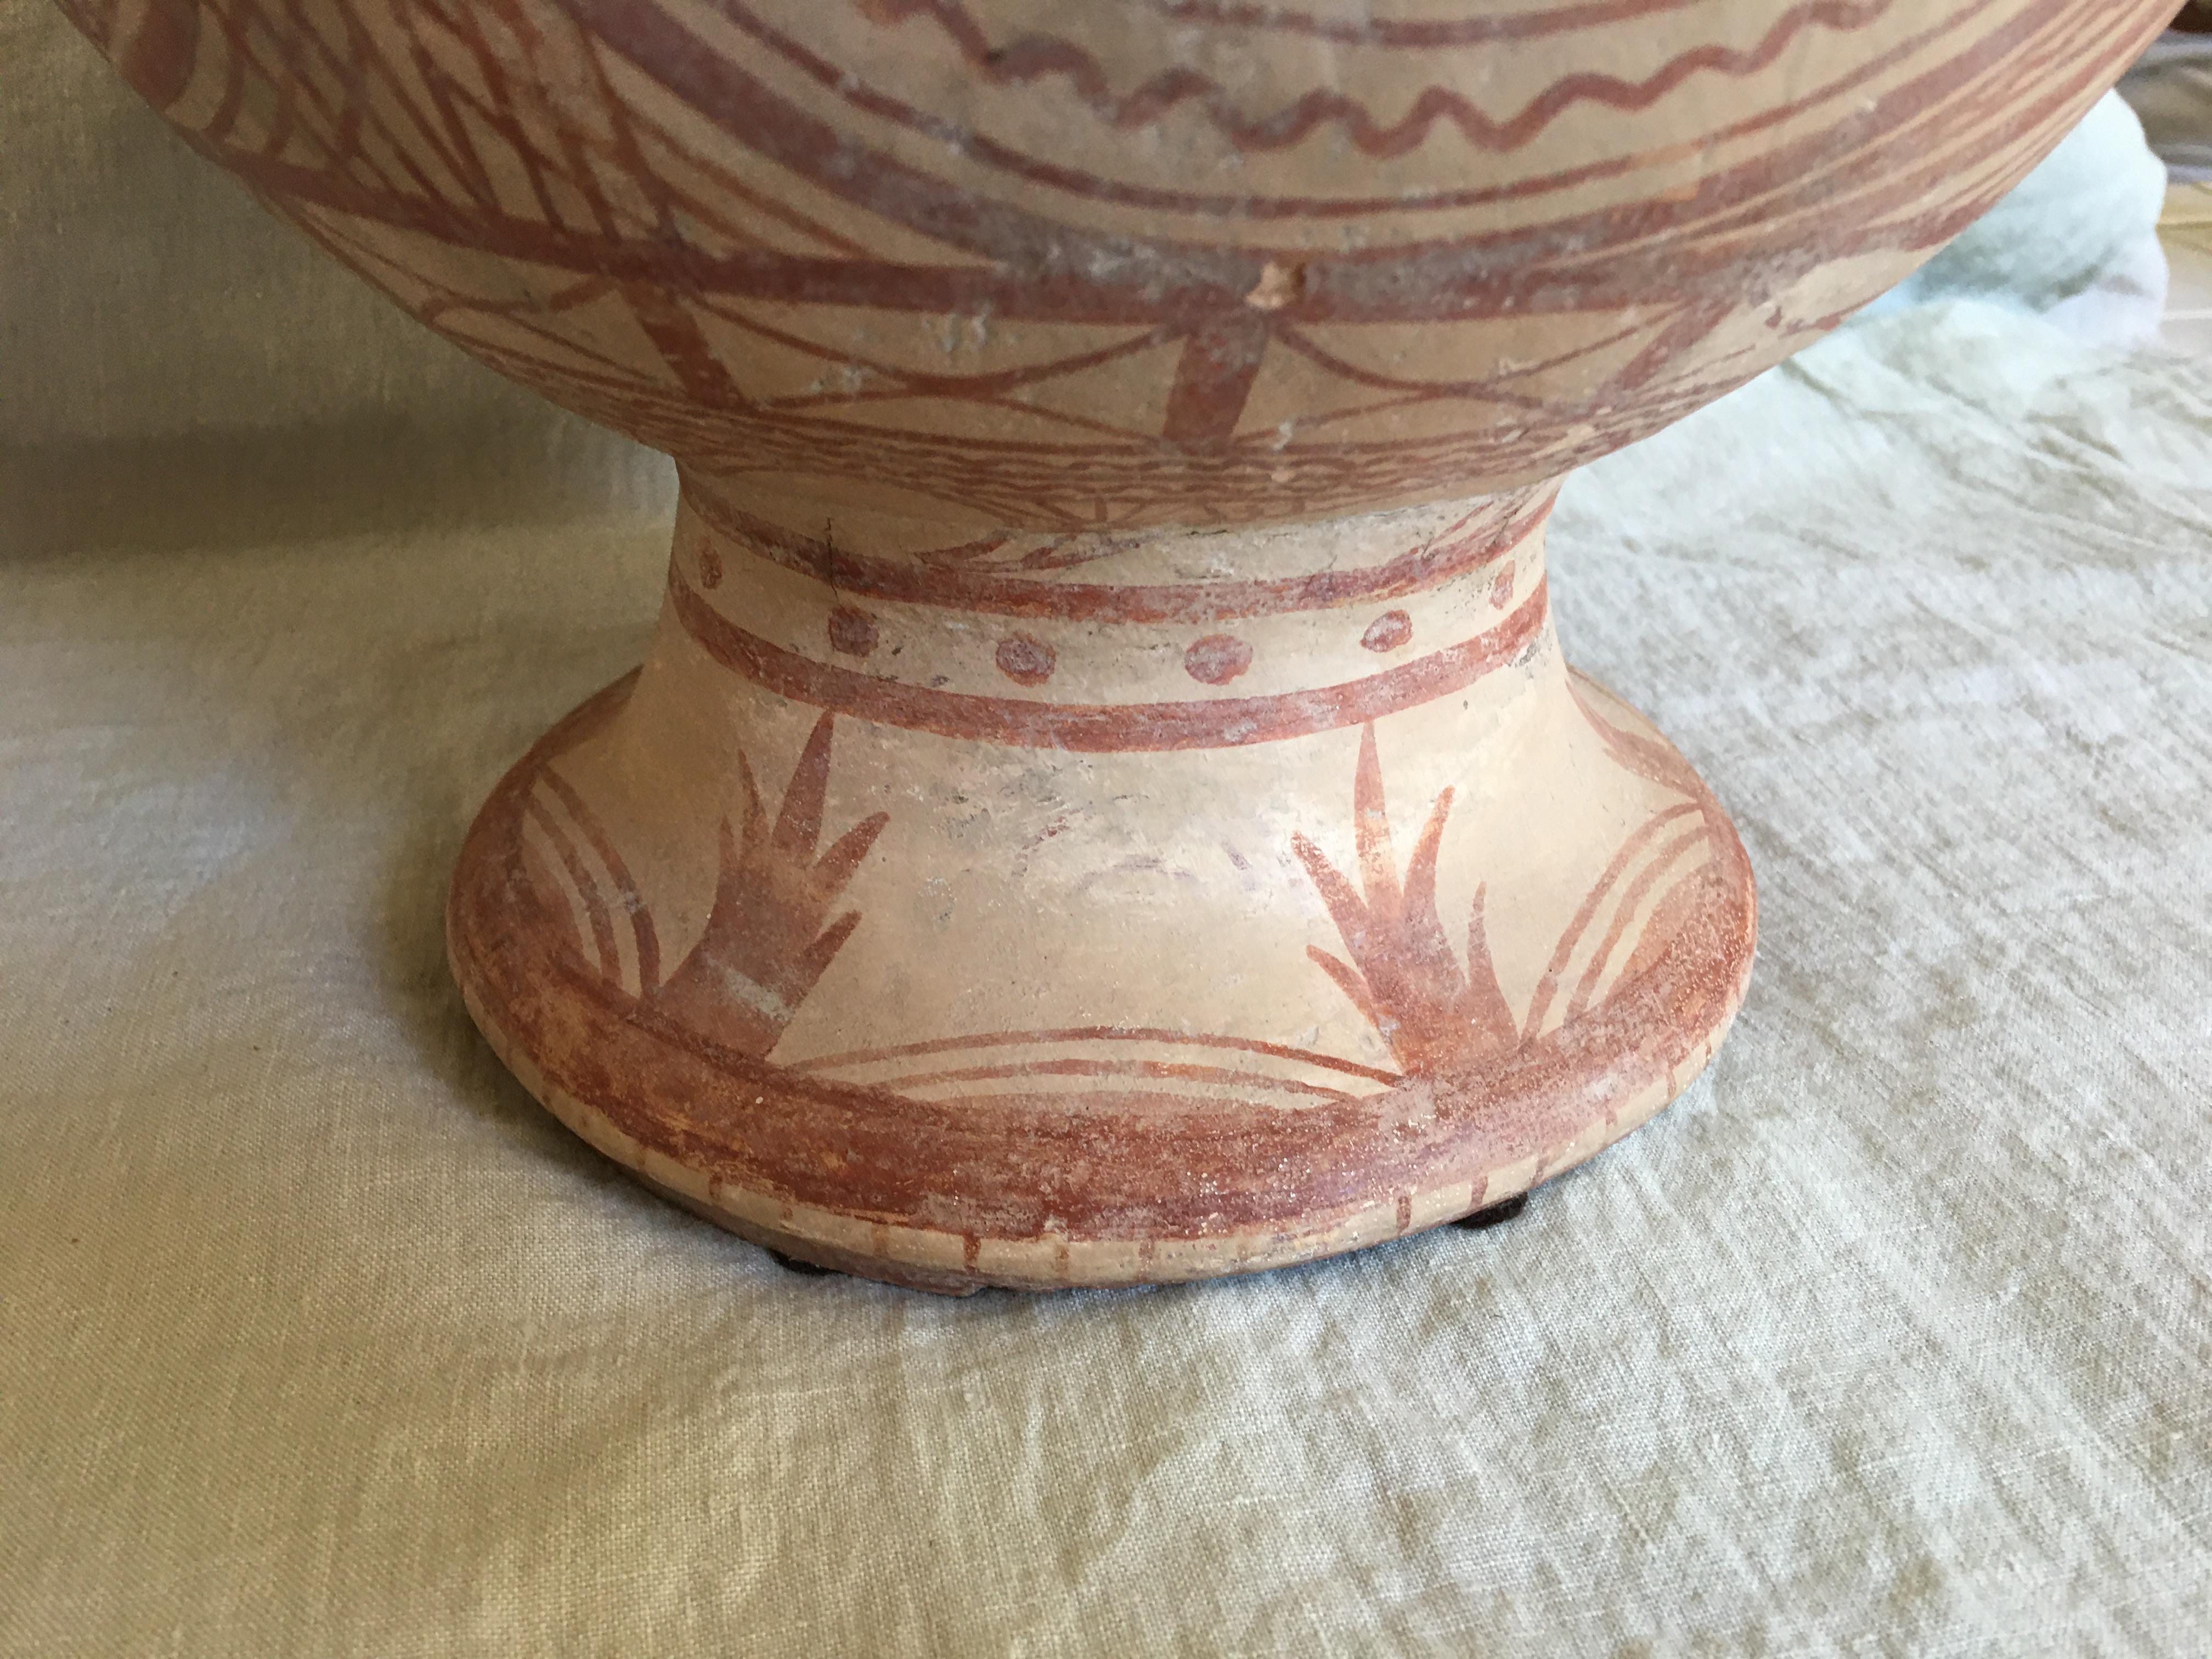 Thai Ancient Ban Chiang Painted Pottery Vessel, circa 300 BC 3